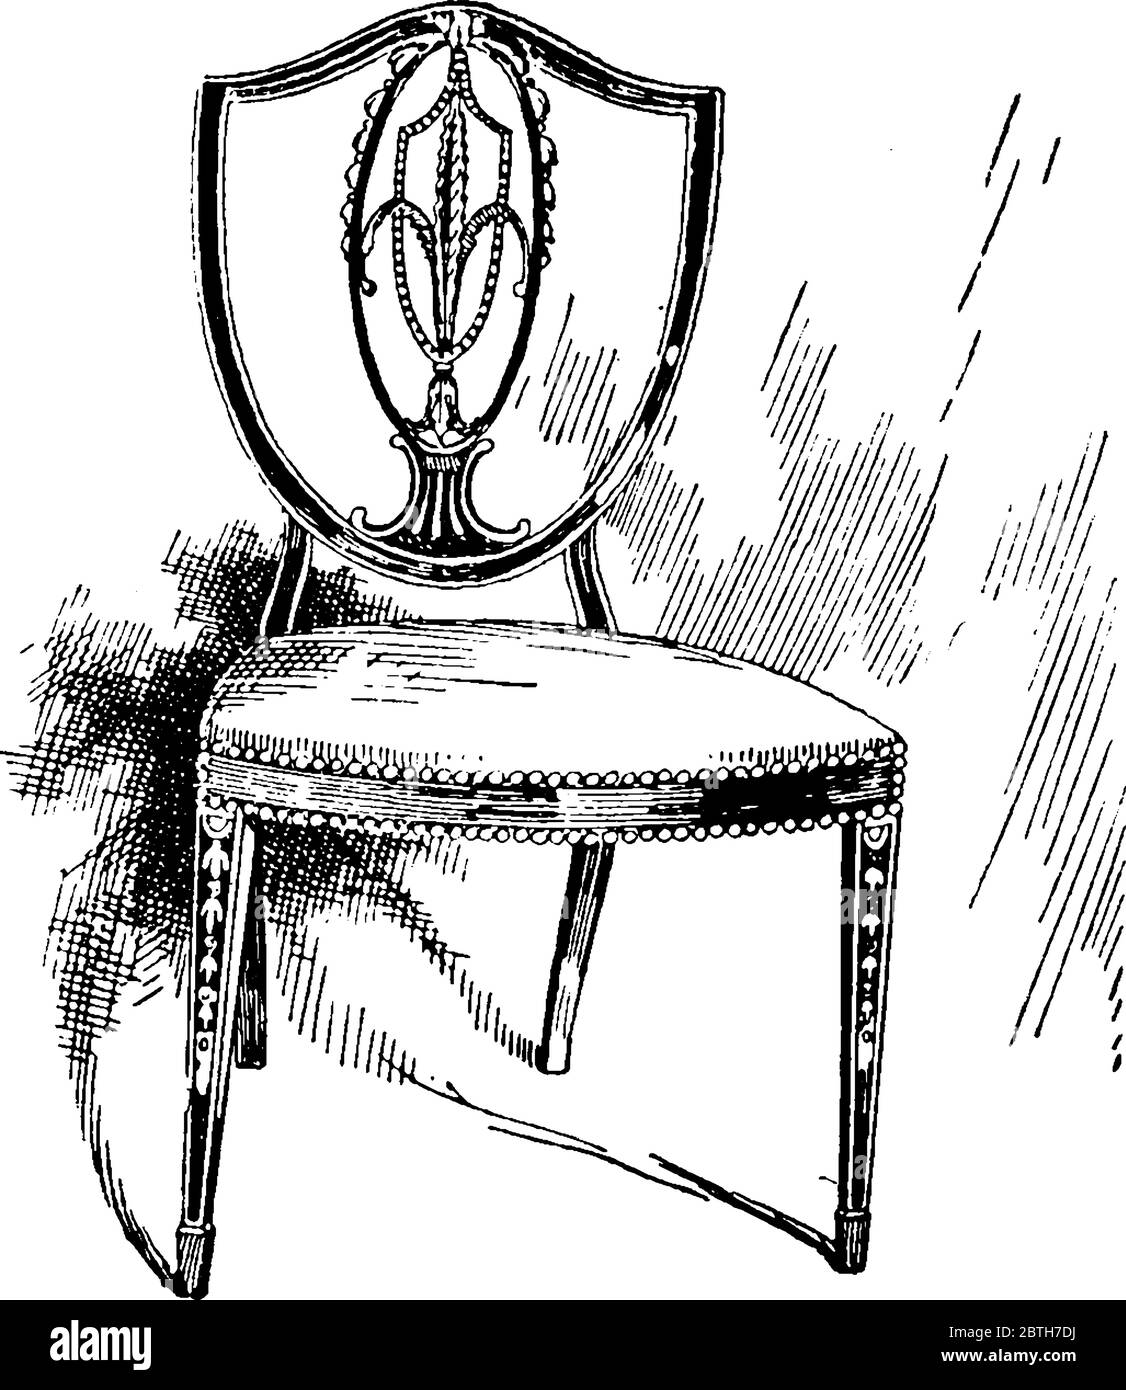 Image montrant une ancienne chaise conçue par George Heplewhite au XVIIIe siècle, dessin de ligne vintage ou illustration de gravure. Illustration de Vecteur